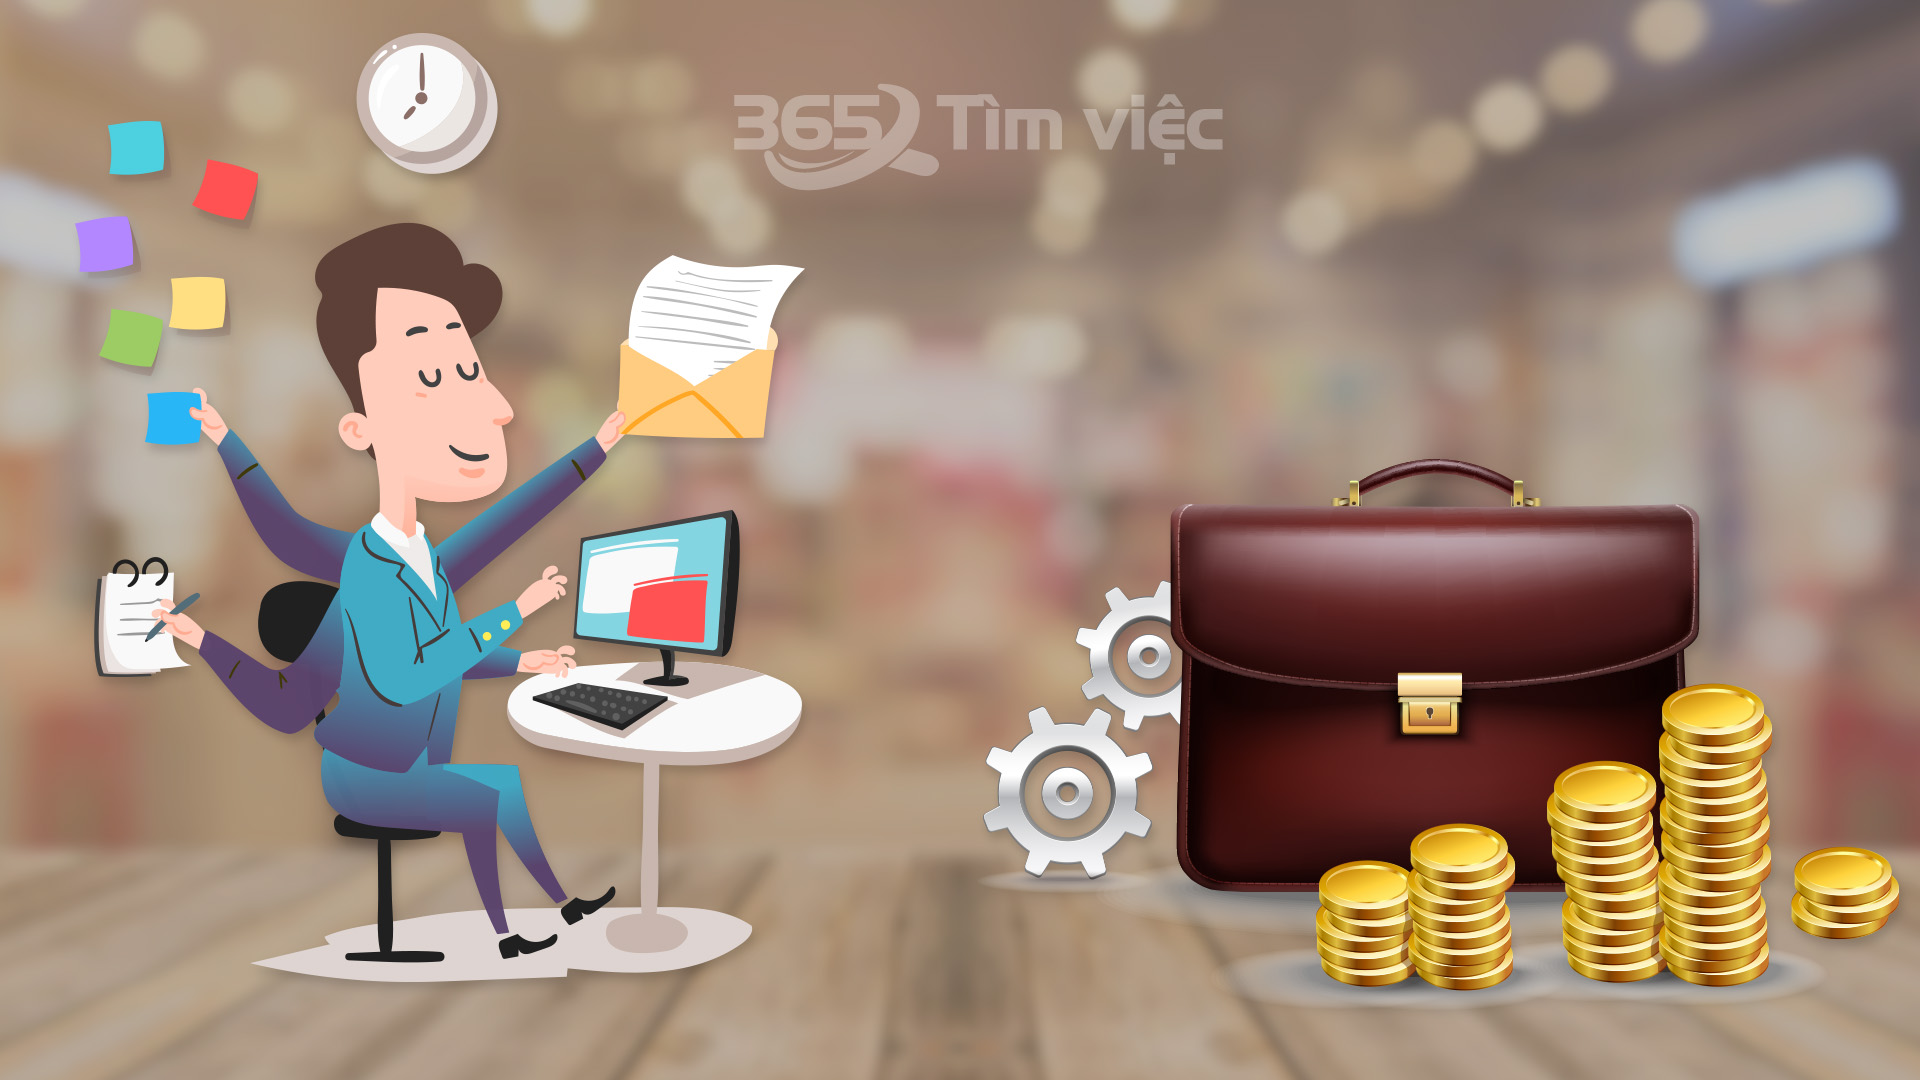 Hướng dẫn tìm việc tại công ty trên trang web timviec365.vn